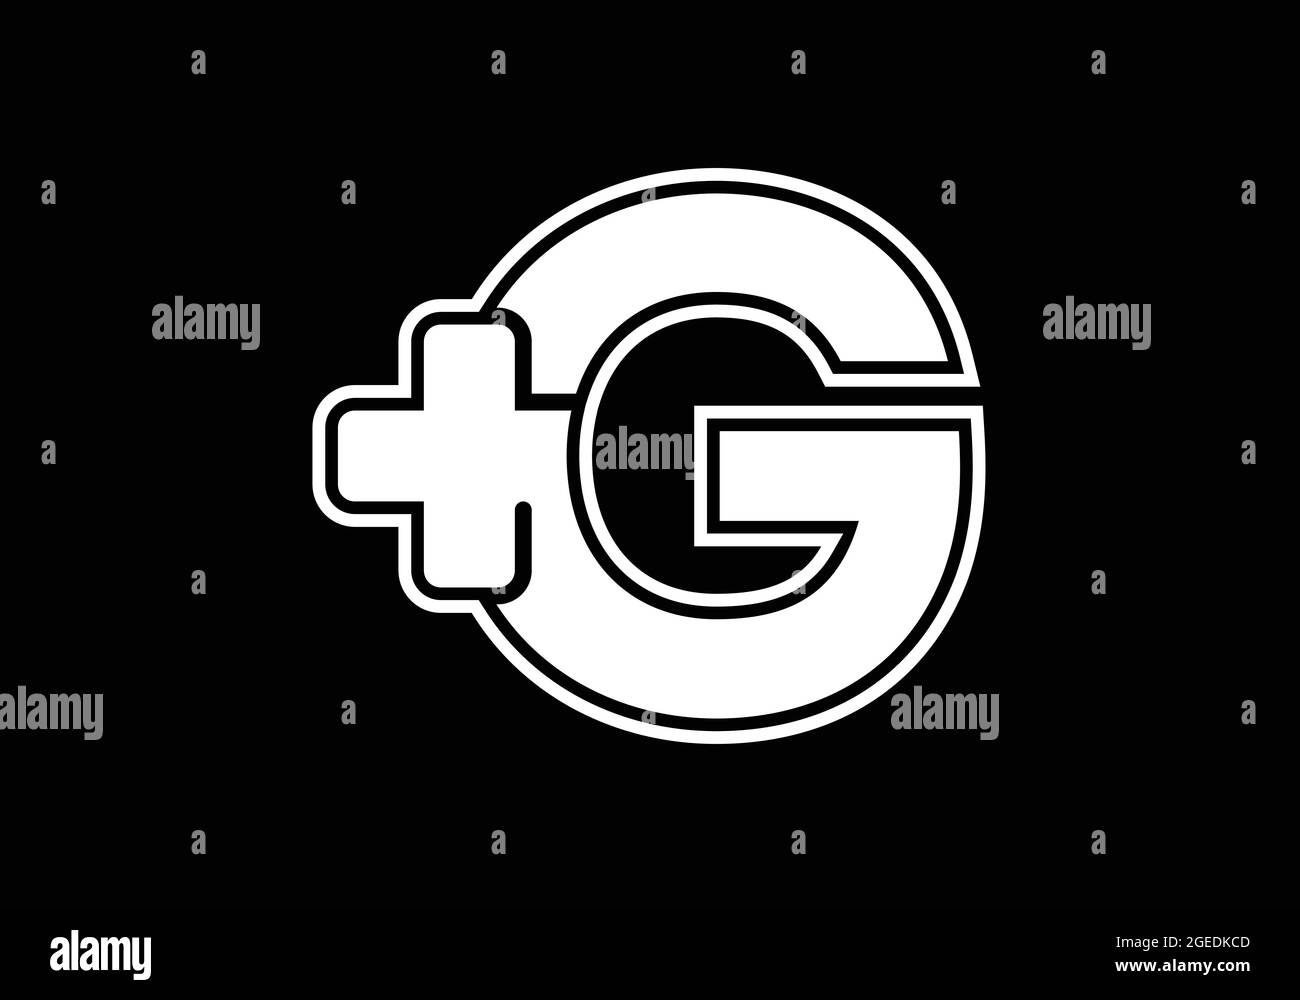 Anfängliches G-Monogramm-Alphabet mit einem Plus-Logo-Zeichen weiß auf schwarzem Hintergrund. Schrift-Emblem. Modernes Vektorlogo für Medizin- oder Gesundheitsbranche Stock Vektor